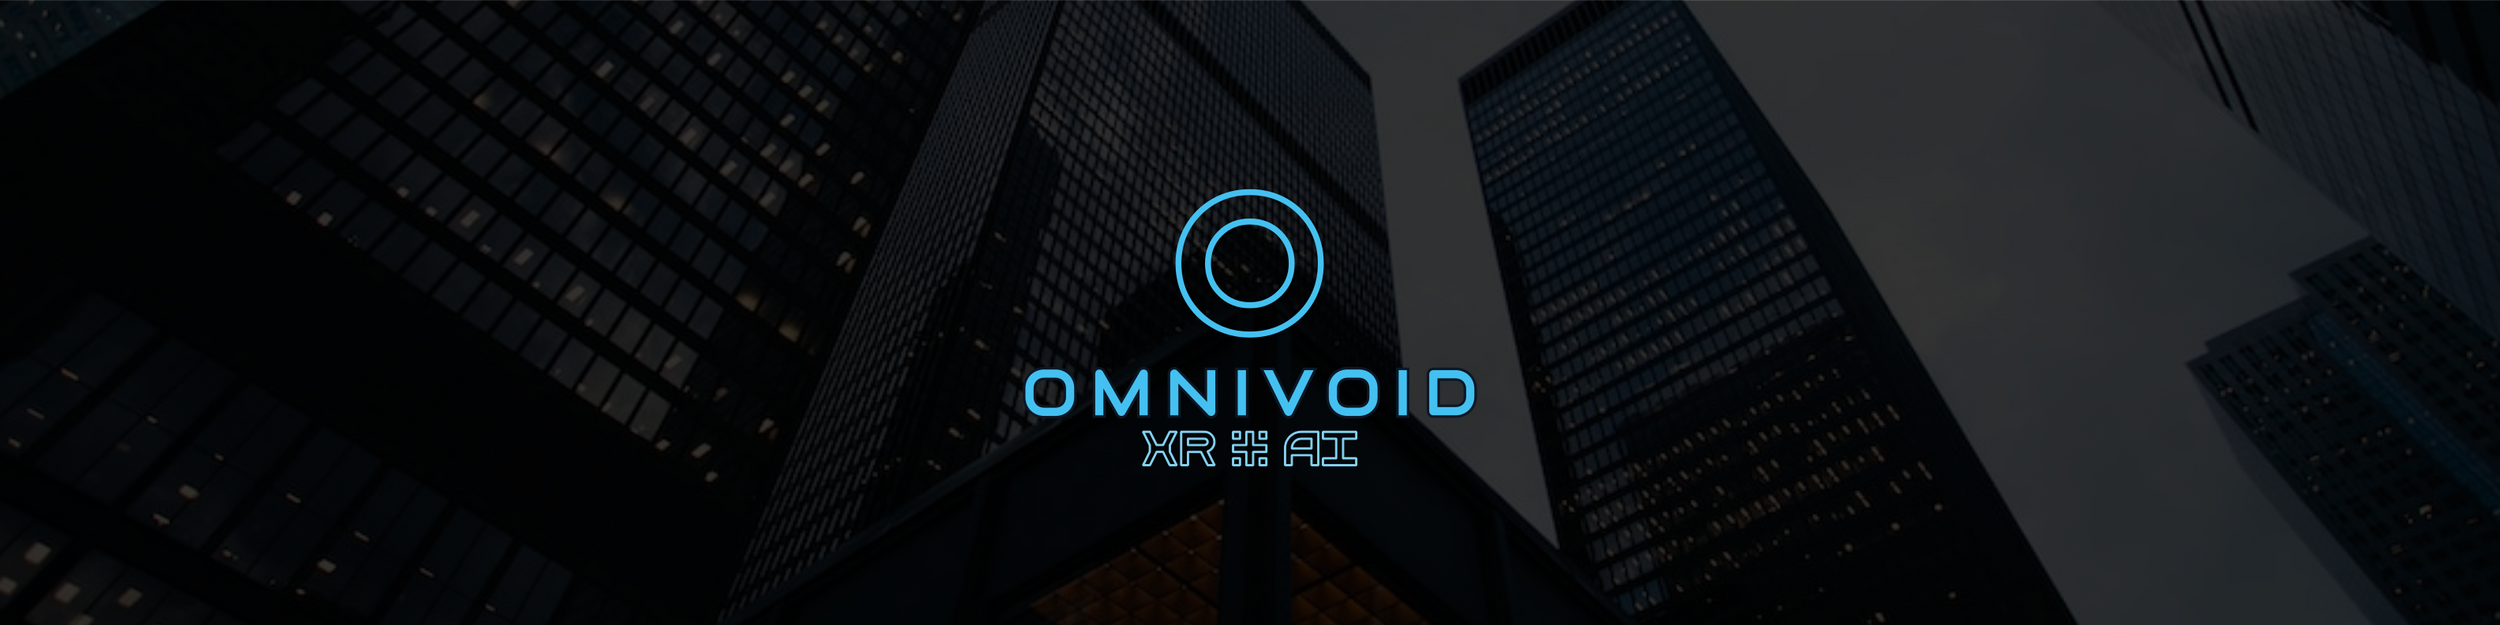 www.omnivoid.net